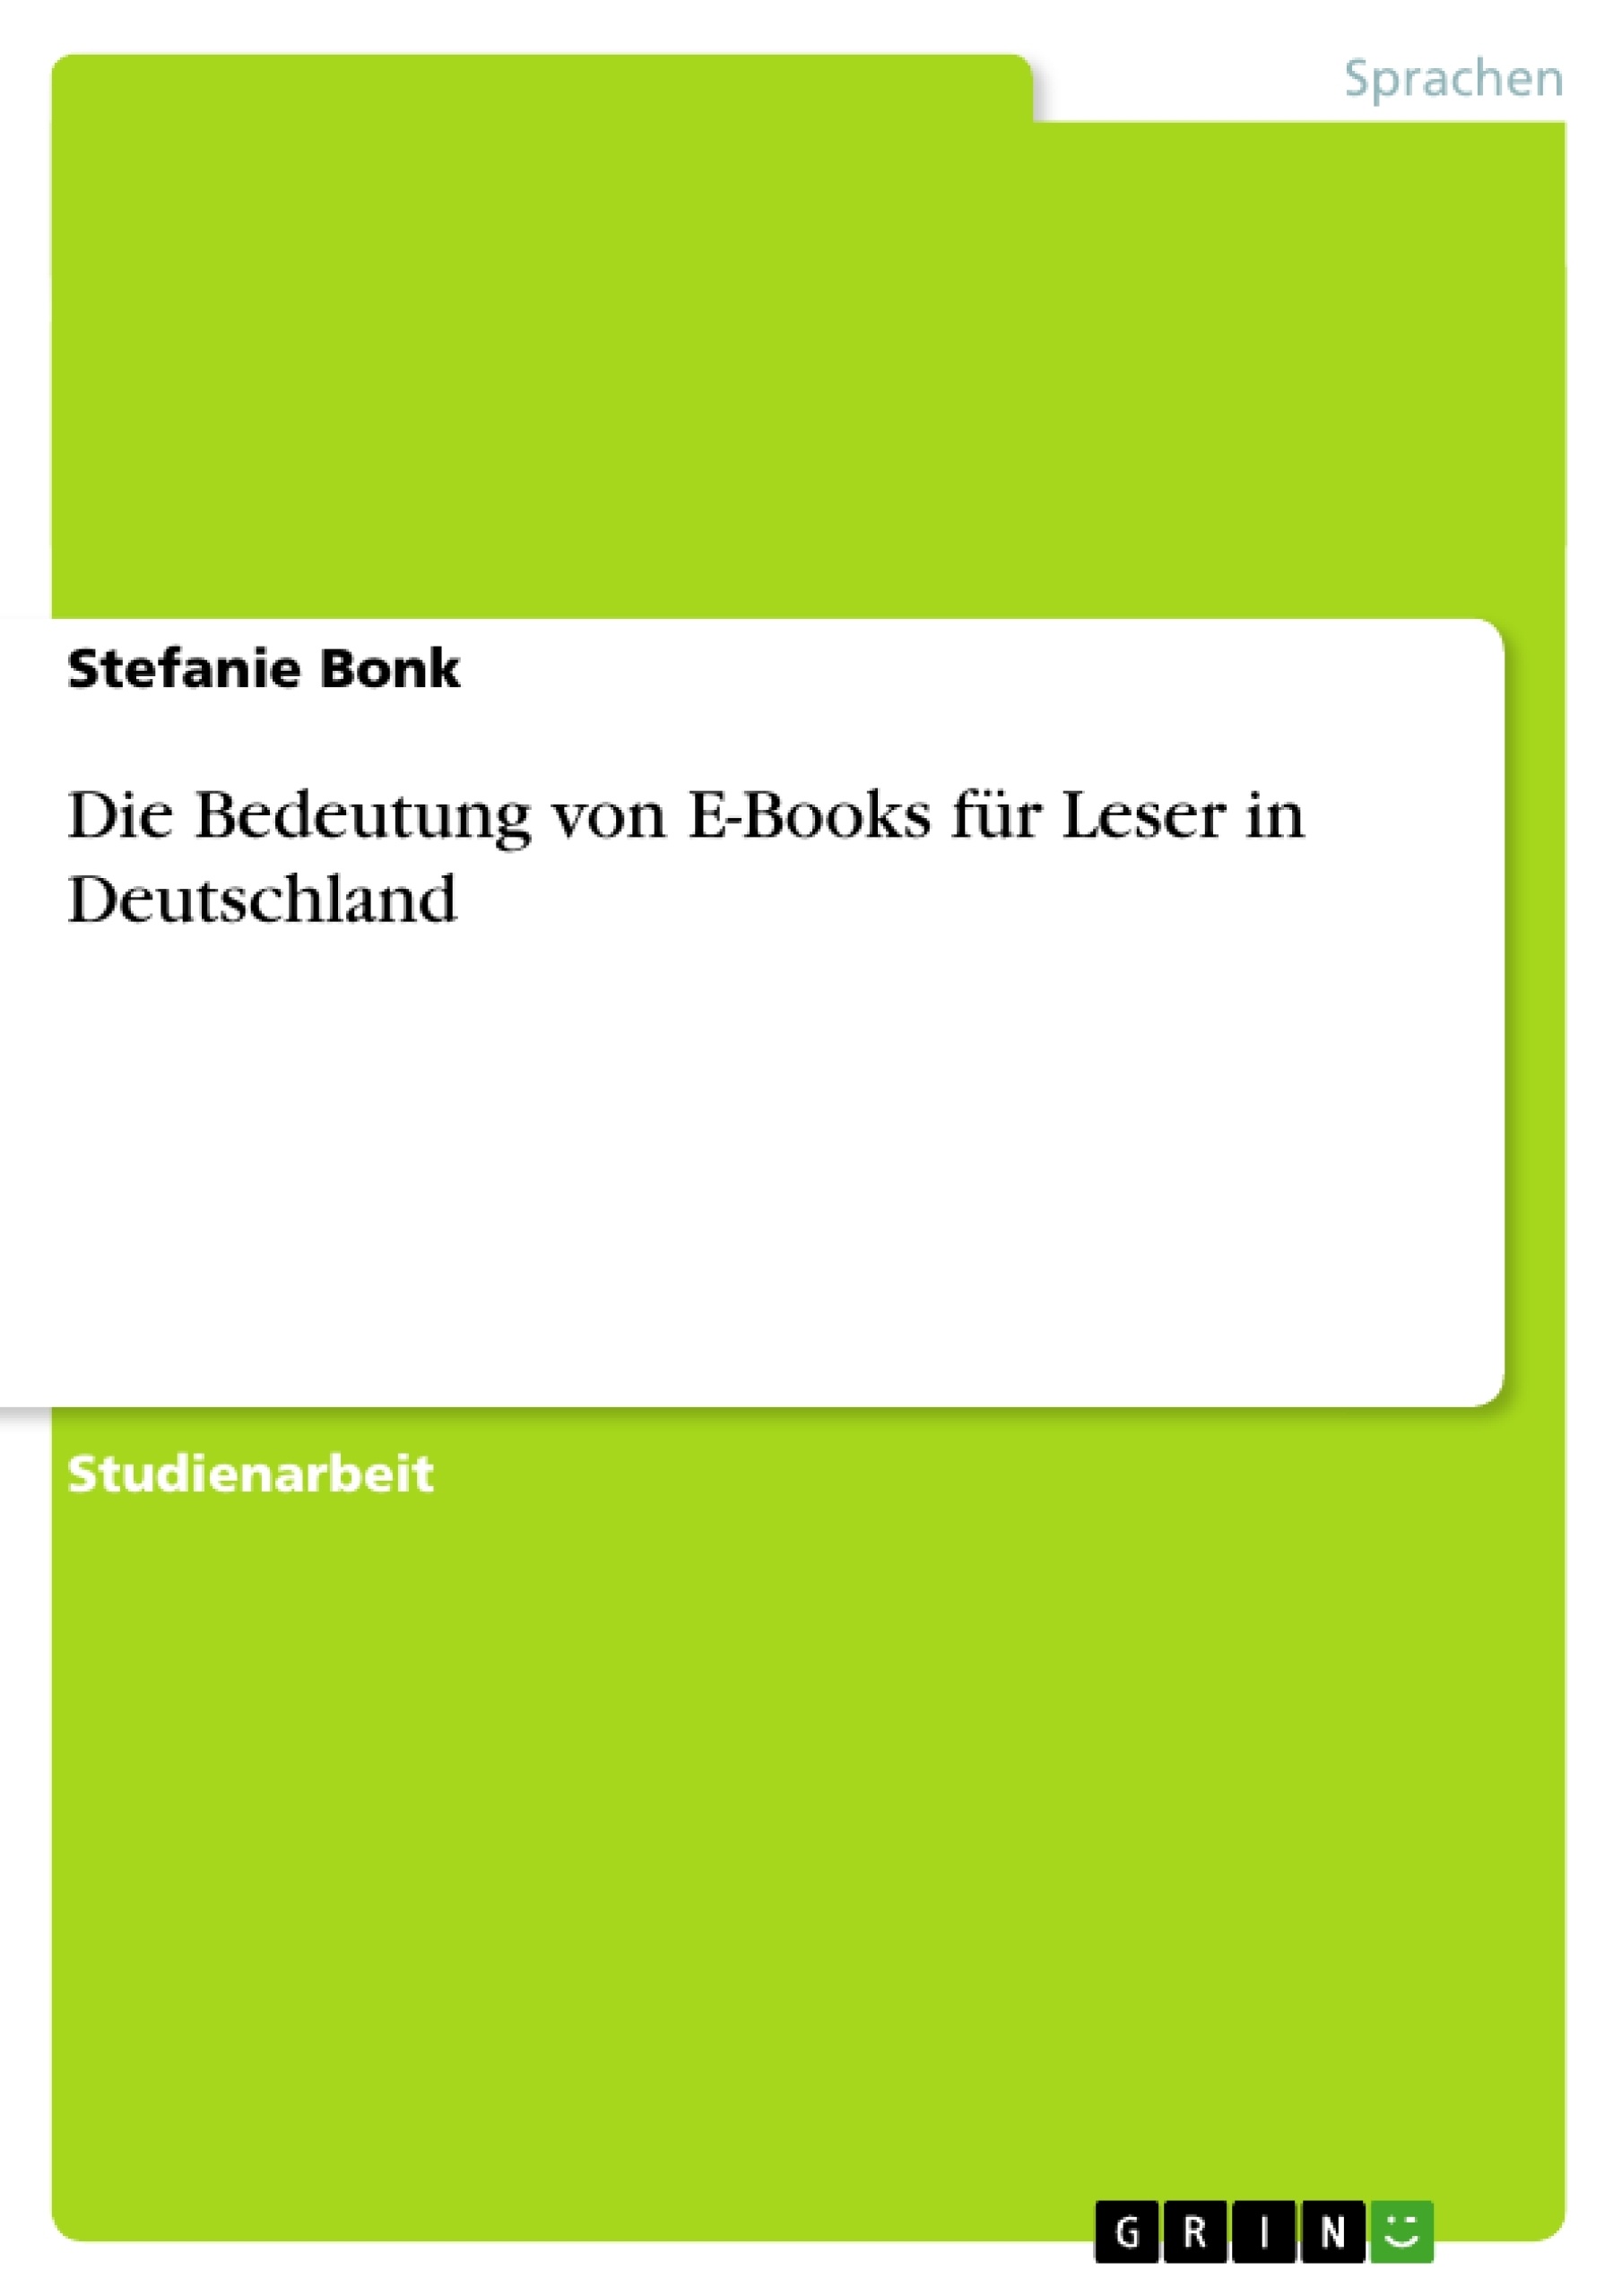 Title: Die Bedeutung von E-Books für Leser in Deutschland